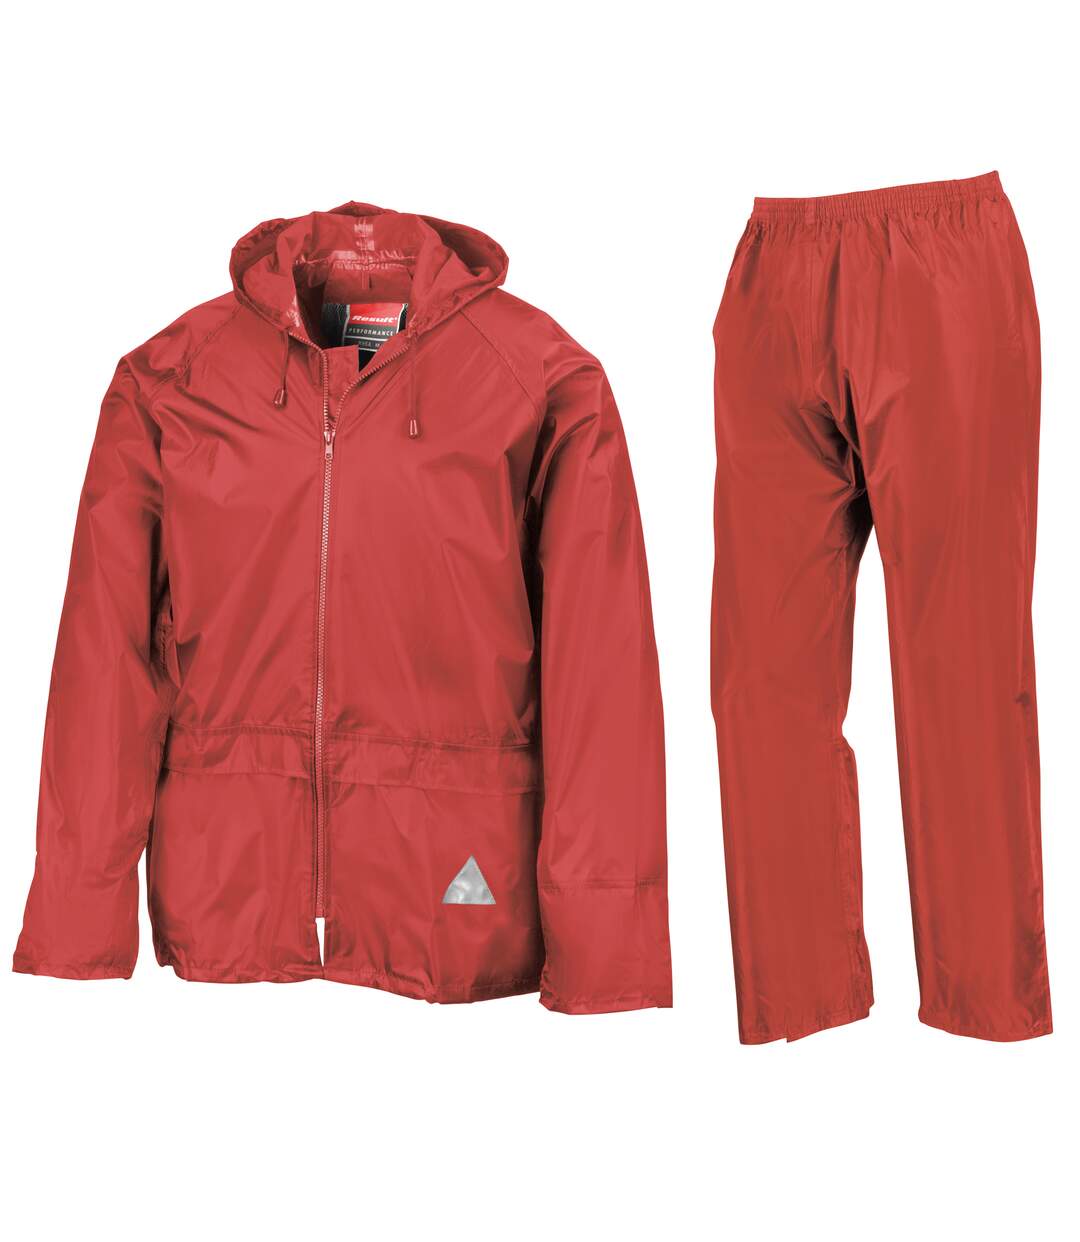 Result - Veste et pantalon de pluie - Homme (Rouge) - UTRW3238